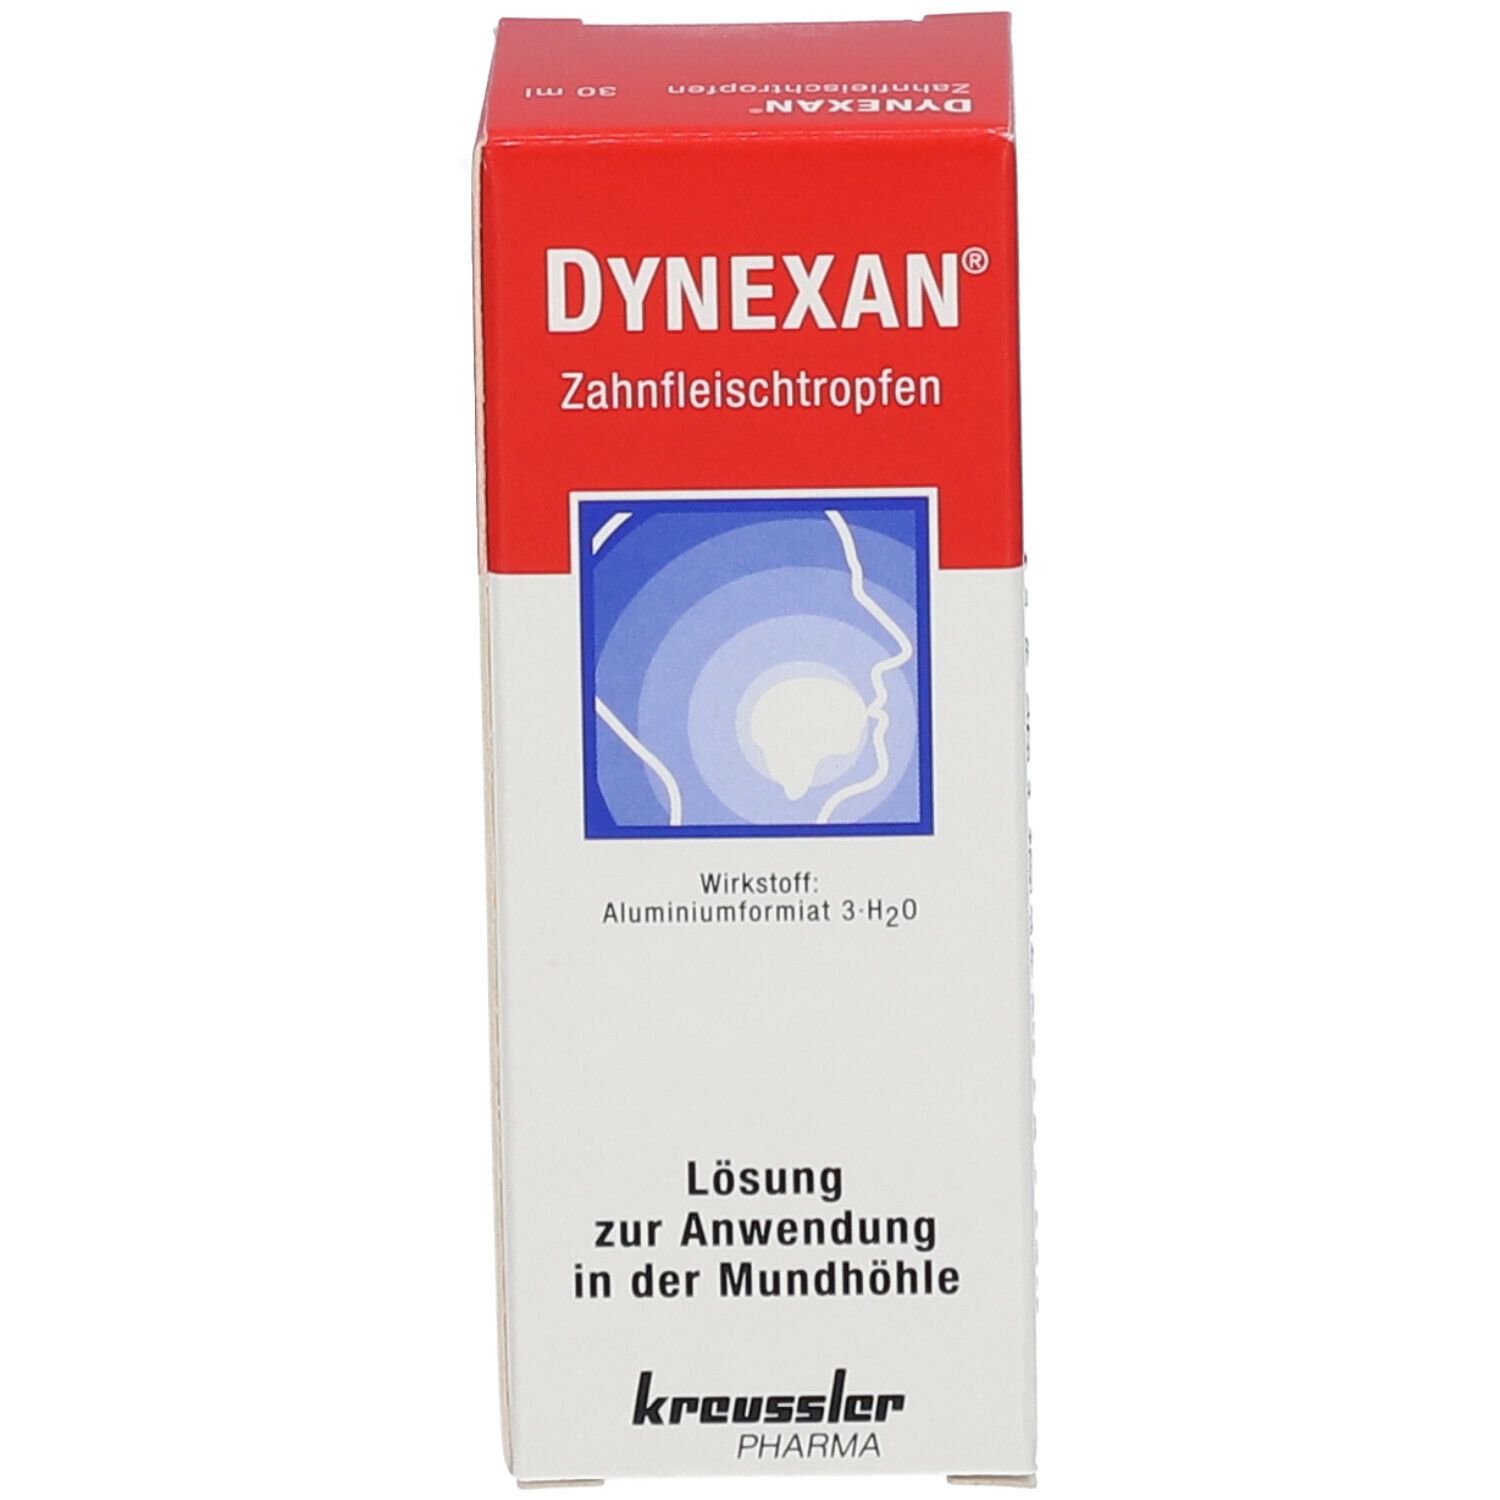 DYNEXAN® Zahnfleischtropfen